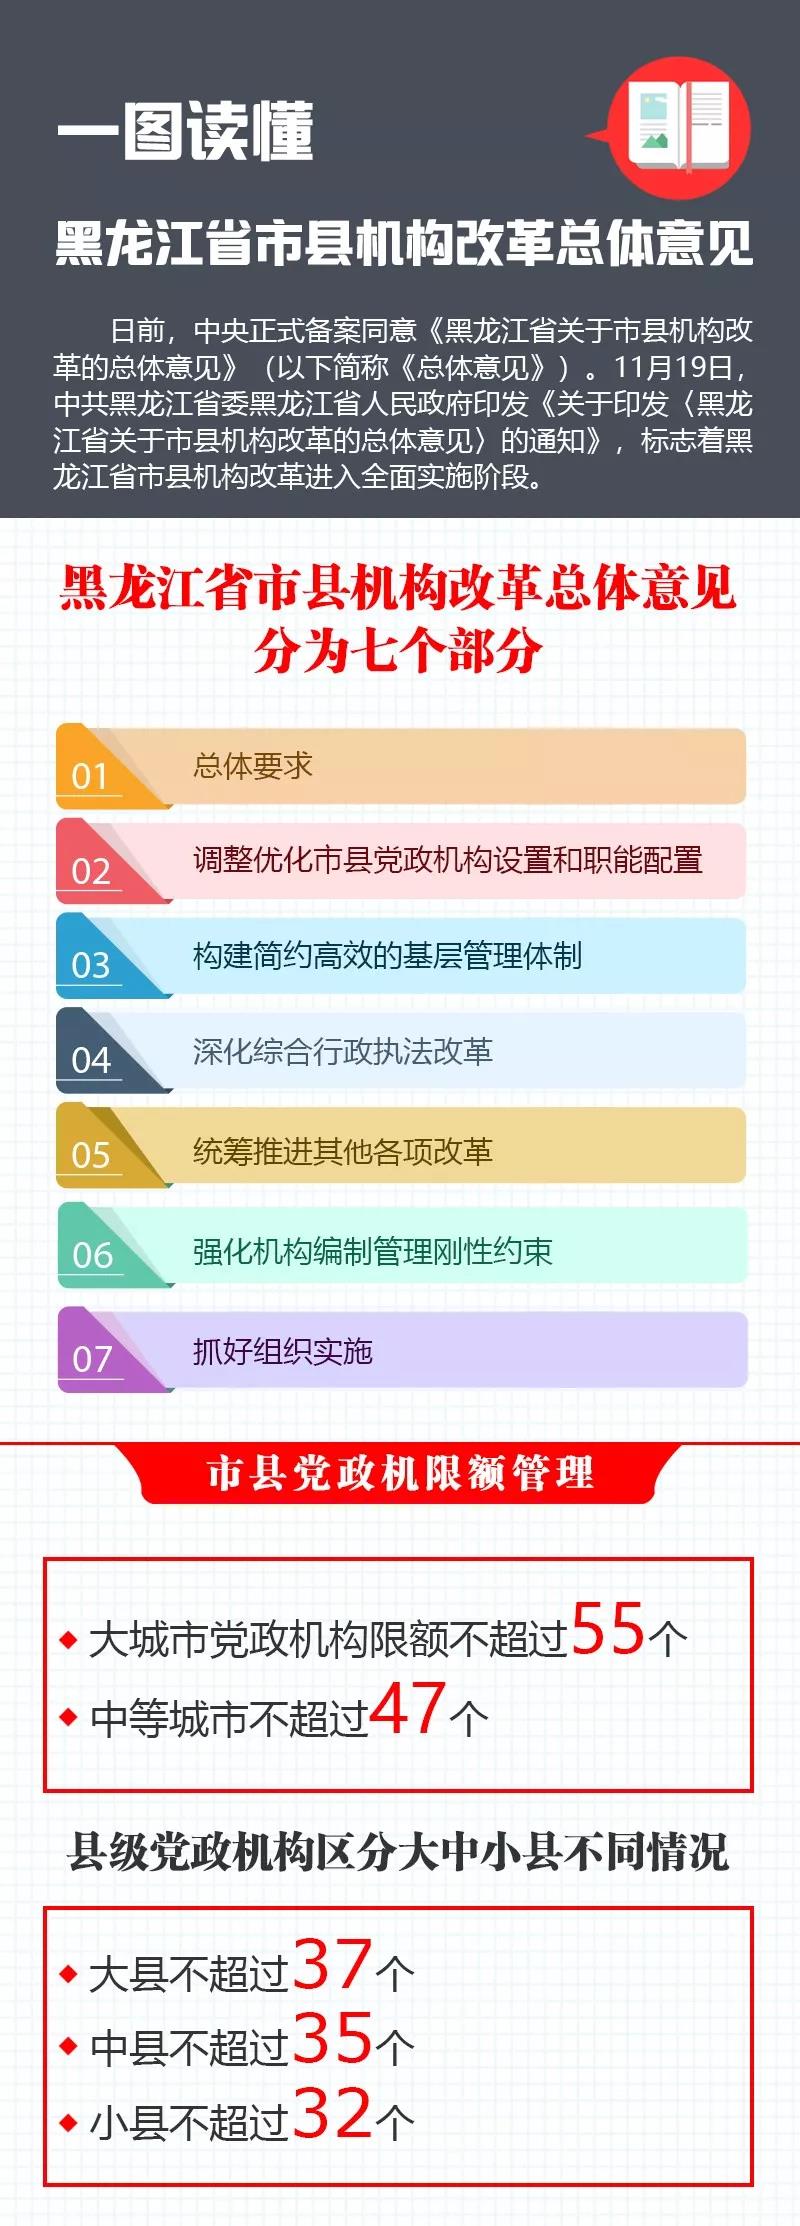 黑龙江省关于市县机构改革的总体意见正式印发